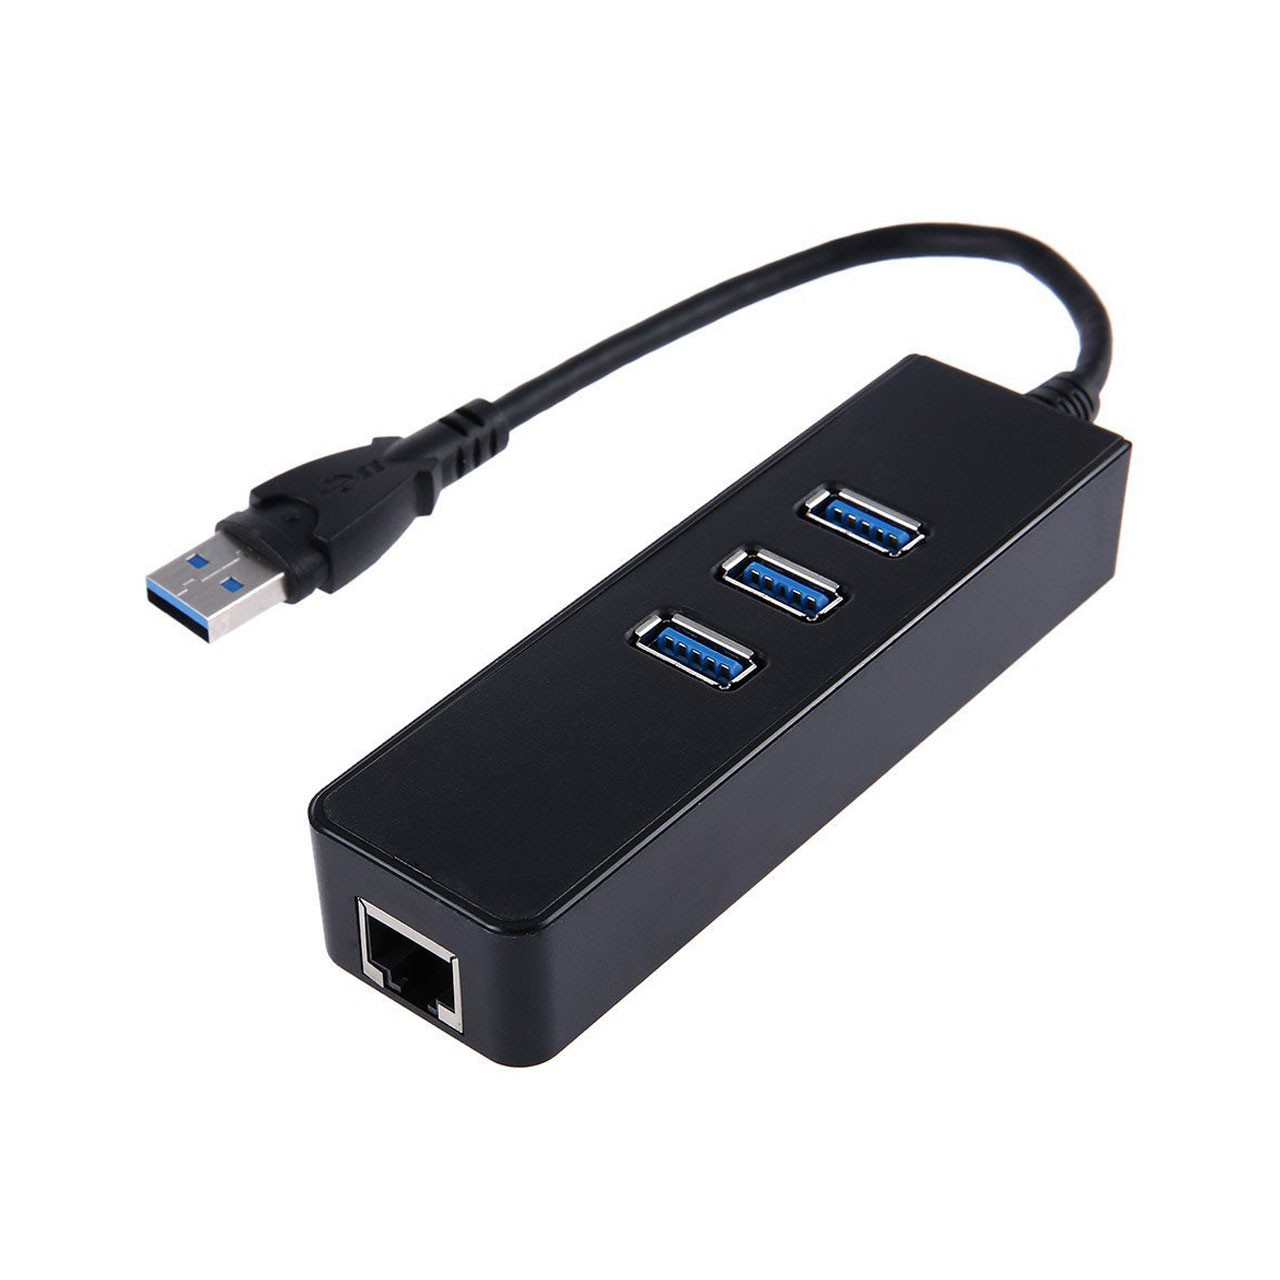 تبدیل USB 3.0 به LAN گیگابیت و هاب USB 3.0 

KY-688 USB 3.0 to 3 Port USB 3.0 Hub Adapter 10GBit/s Gigabit Ethernet for PC MAC Laptop No Need Driver